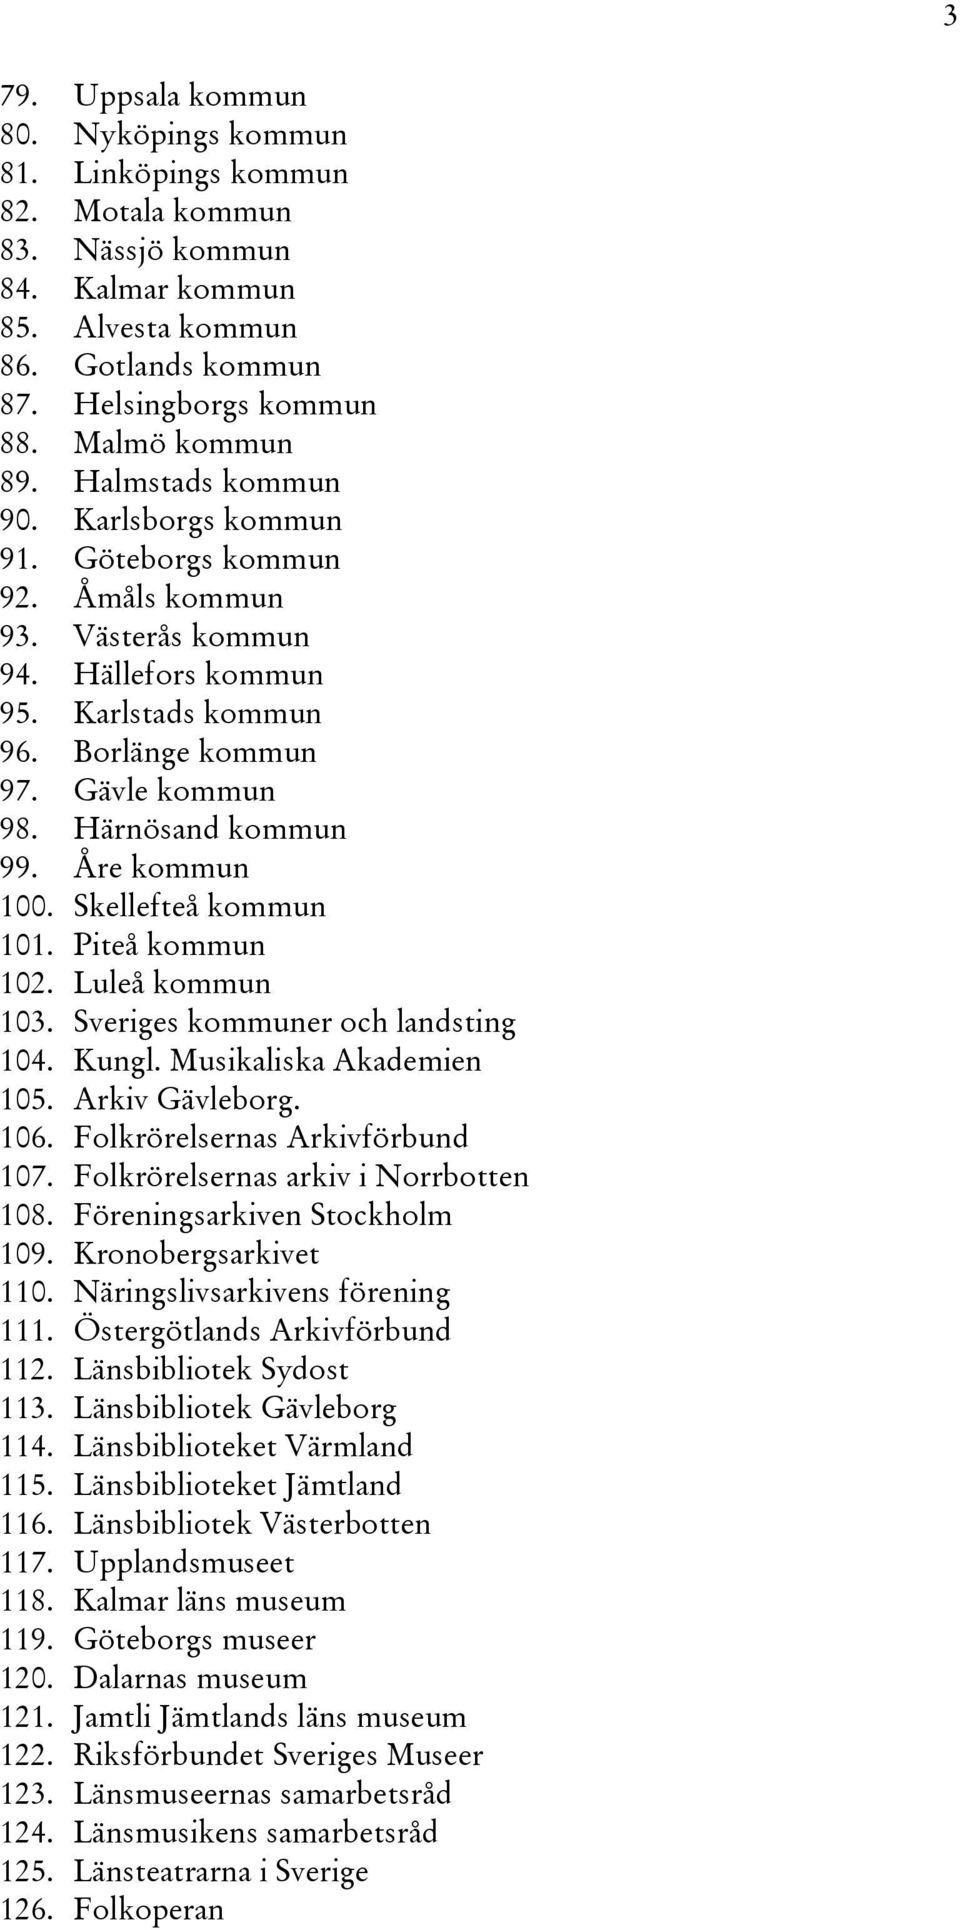 Åre kommun 100. Skellefteå kommun 101. Piteå kommun 102. Luleå kommun 103. Sveriges kommuner och landsting 104. Kungl. Musikaliska Akademien 105. Arkiv Gävleborg. 106.